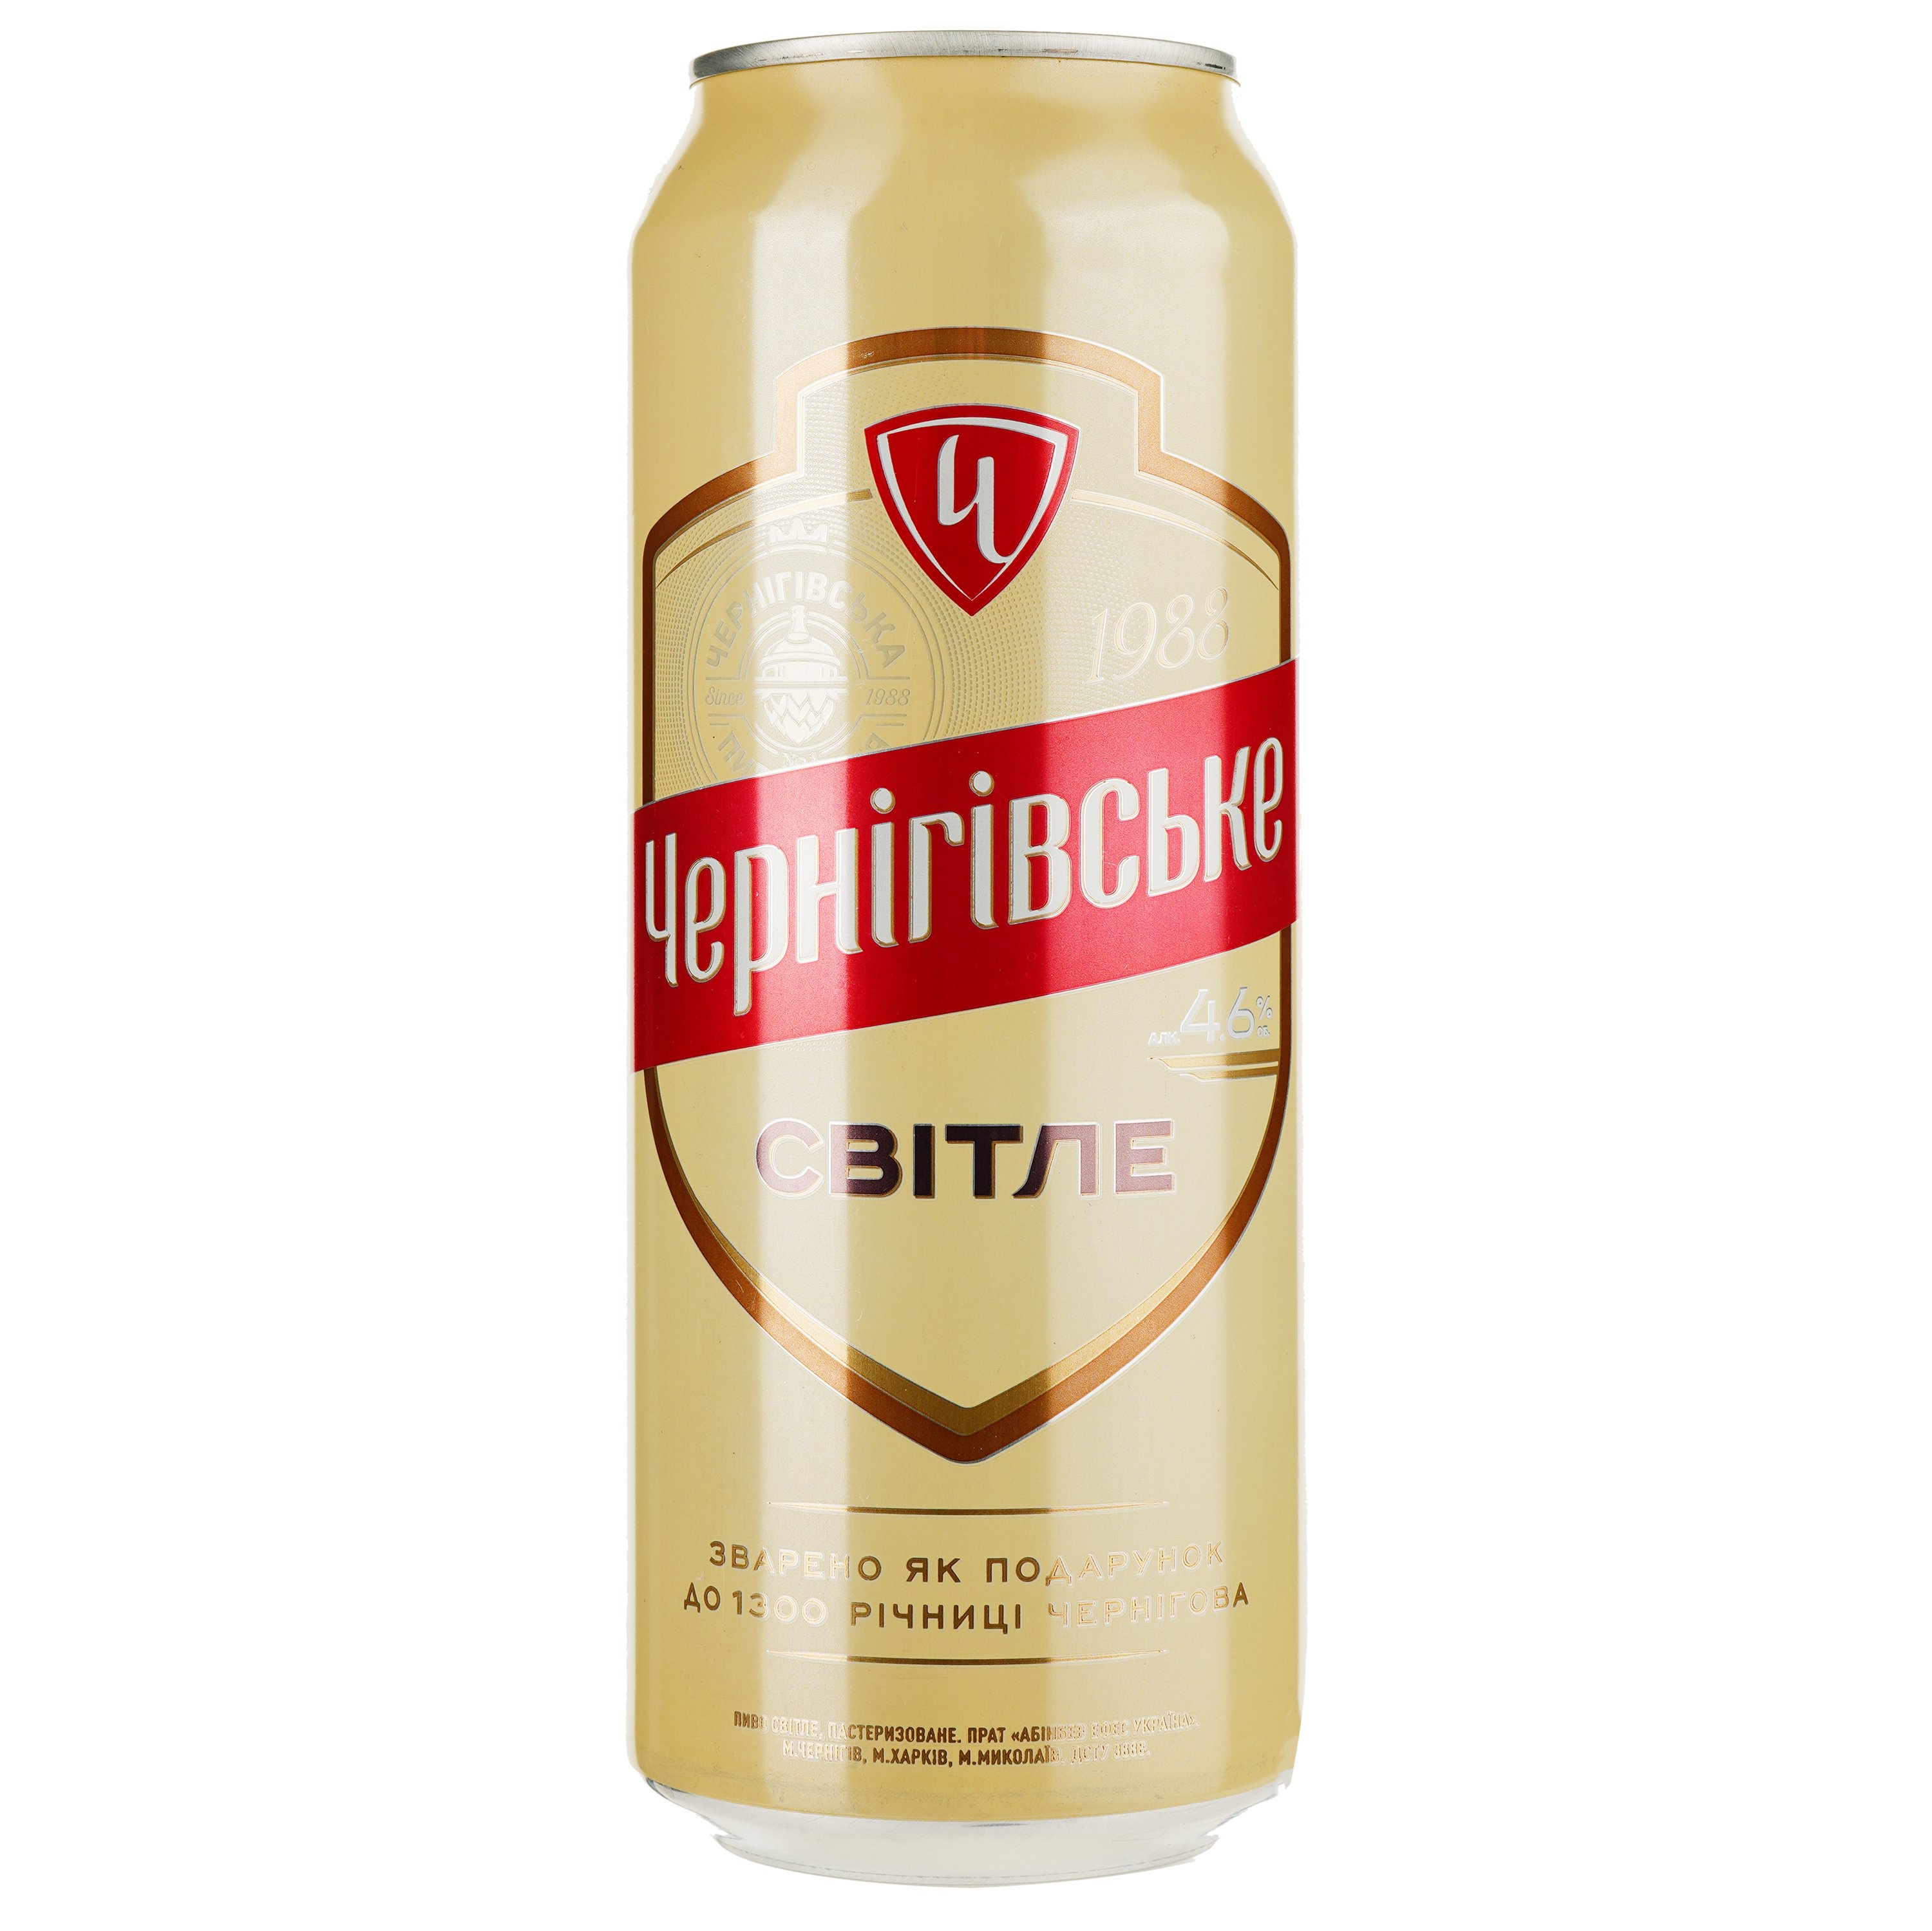 Пиво Чернігівське, светлое, 4,8%, ж/б, 0,5 л (243971) - фото 1